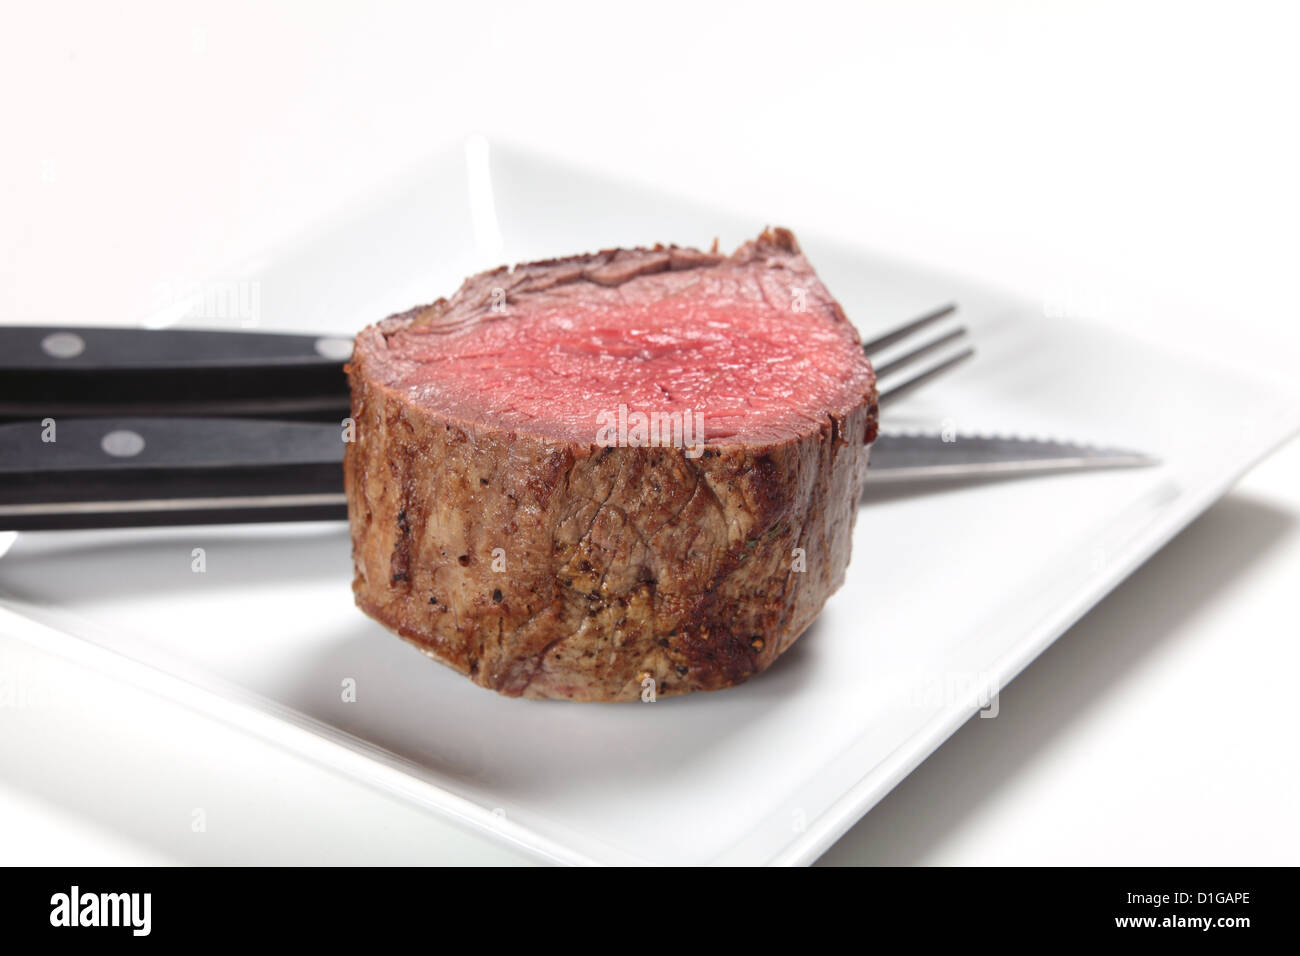 Ein Chateaubriand oder Filet Steak auf einen Teller mit Steak-Messer und Gabel Stockfoto